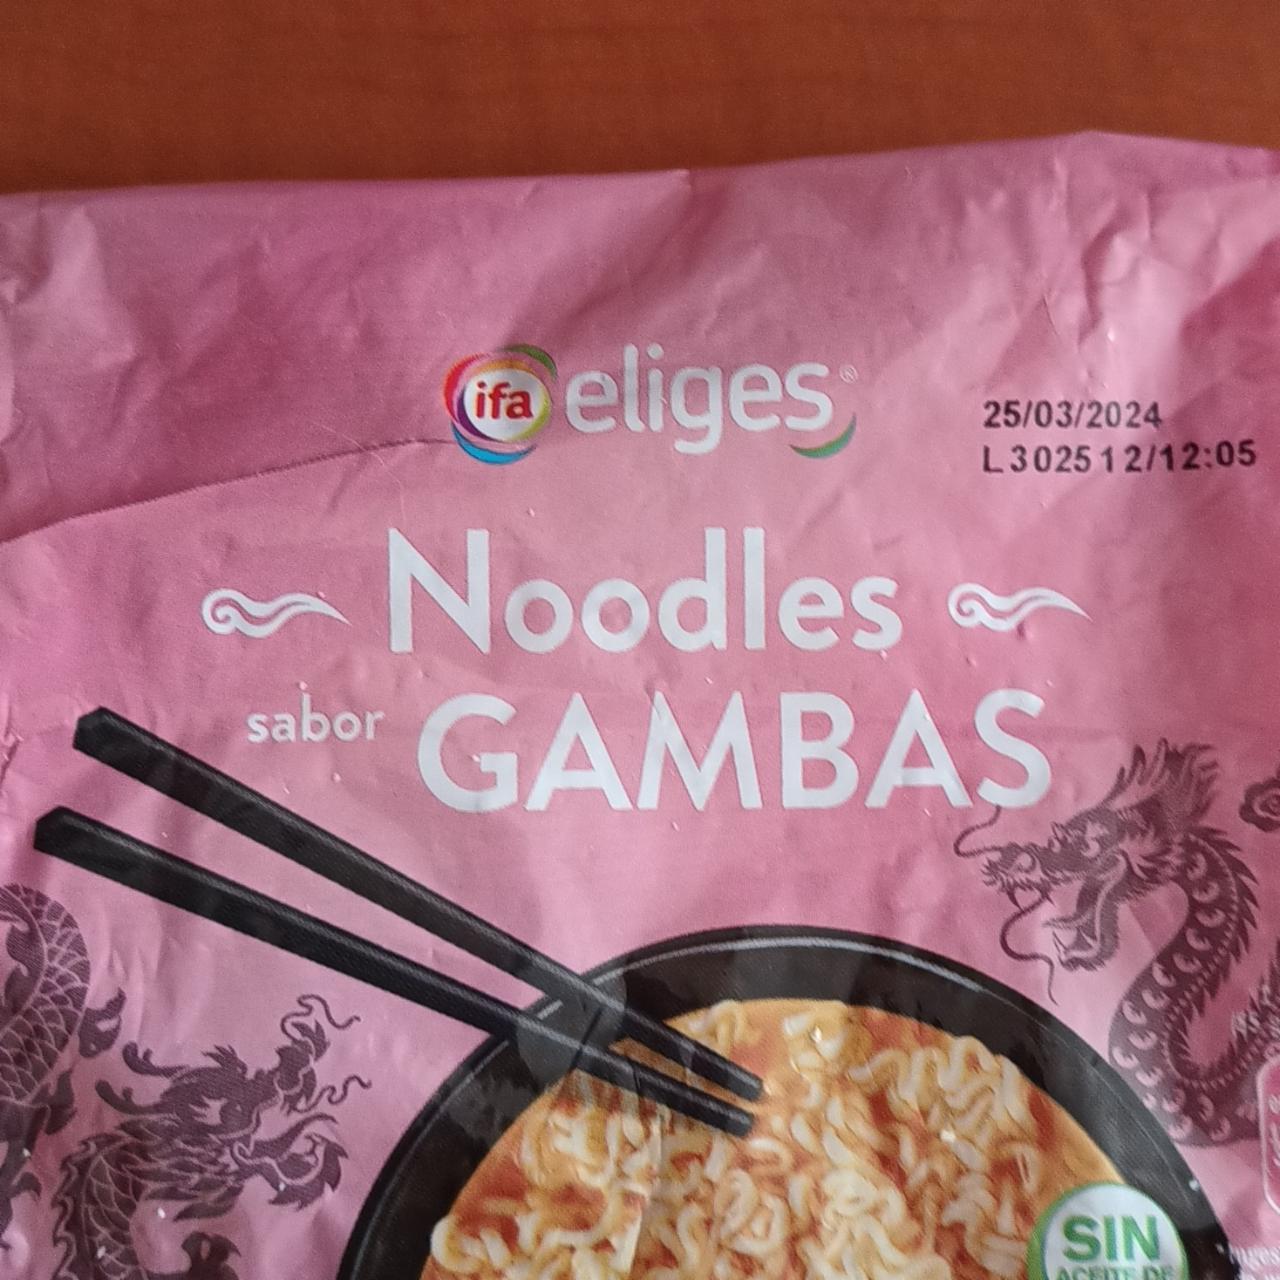 Fotografie - Noodles sabor Gambas Ifa eliges